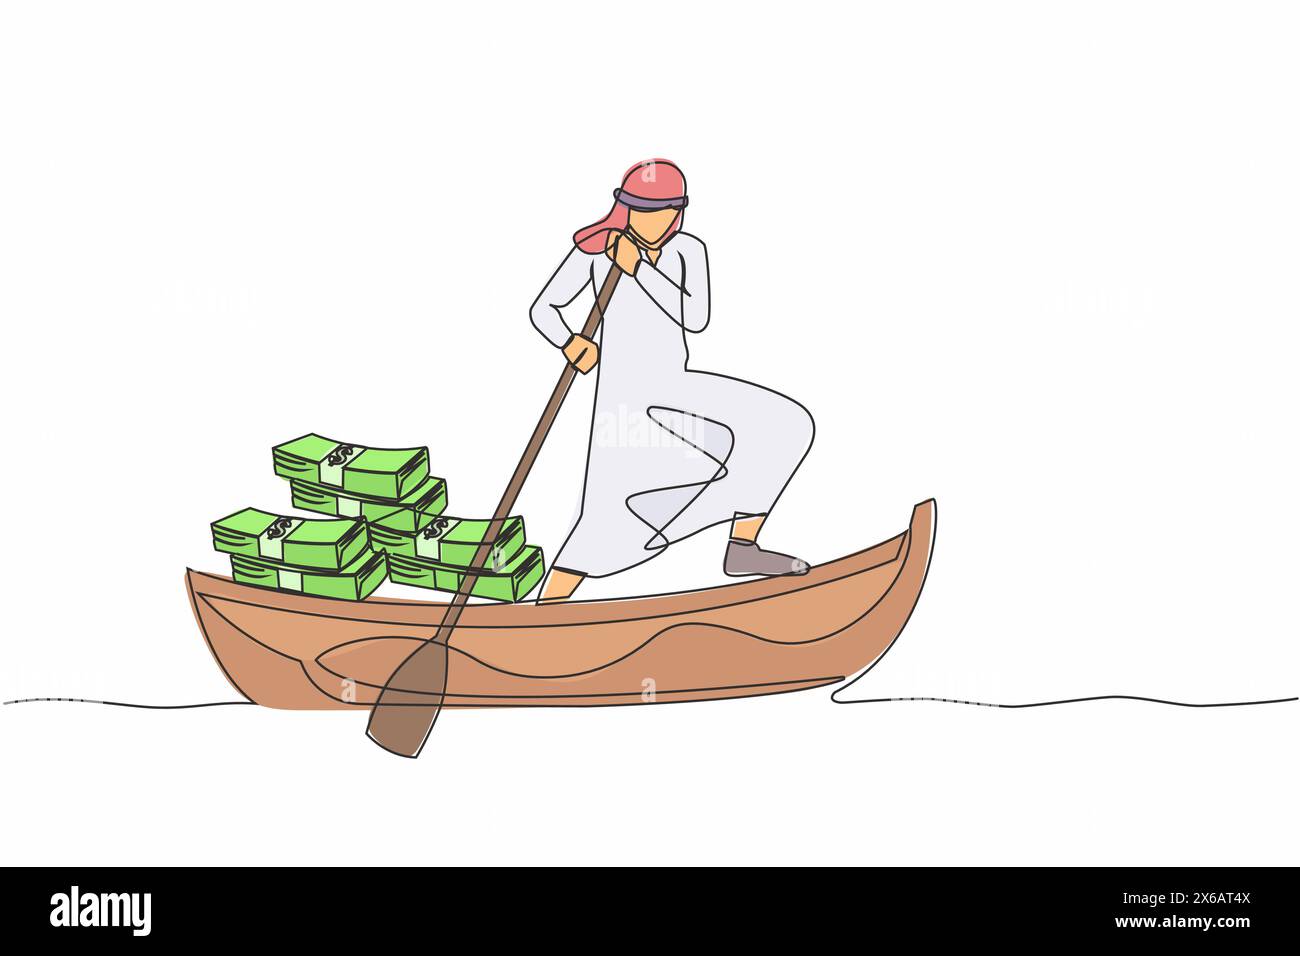 Eine durchgehende Linie mit arabischem Geschäftsmann, der auf einem Boot mit einem Stapel Banknoten davonsegelt. Entfliehen Sie mit Geld. Finanzkriminalität, Steuerhinterziehung, Money lau Stock Vektor